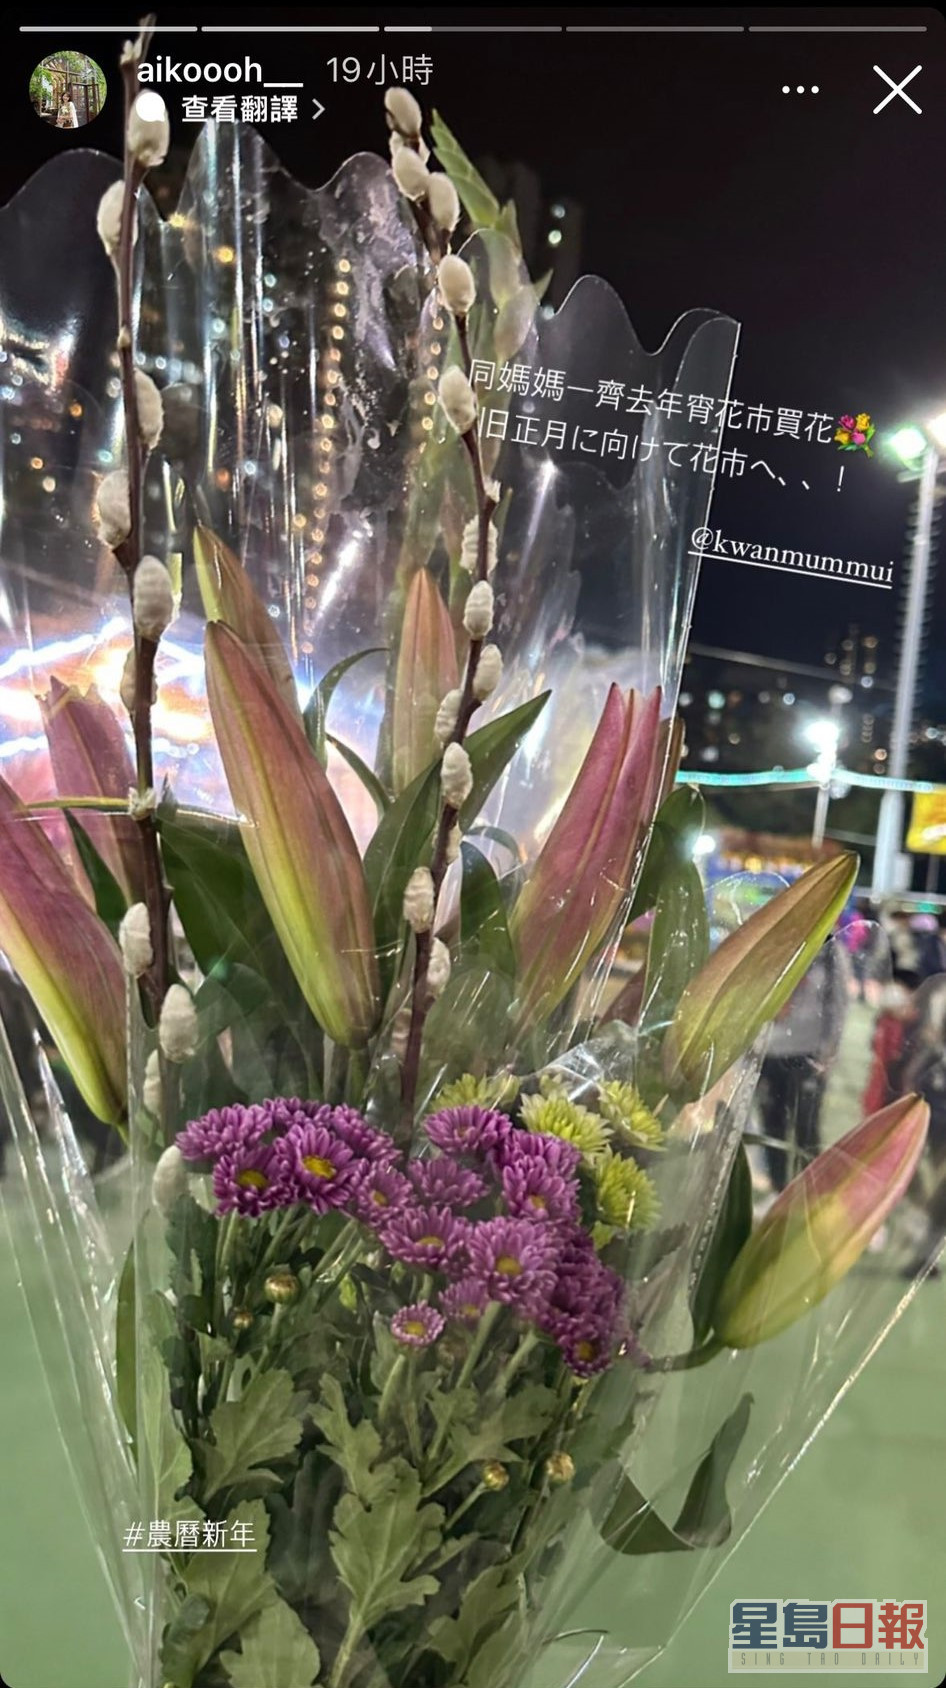 最后滨口爱子陪奶奶买了几束花。